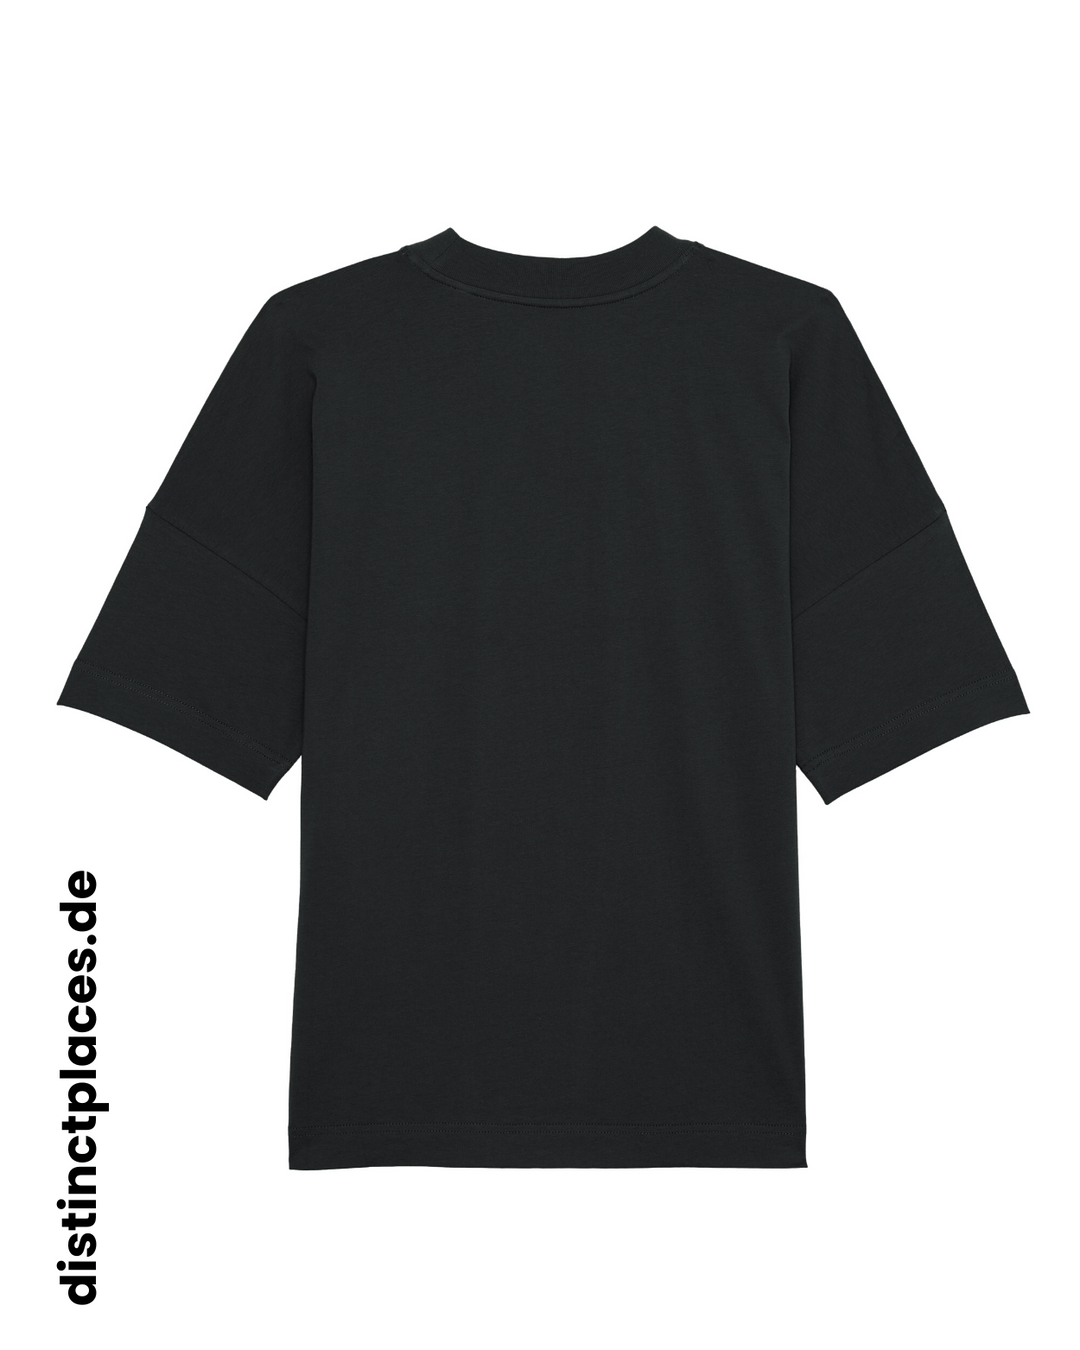 Schwarzes fairtrade, vegan und bio-baumwoll Oversized T-Shirt von hinten mit einem minimalistischem weißen Logo, beziehungsweise Wappen für Hamburg